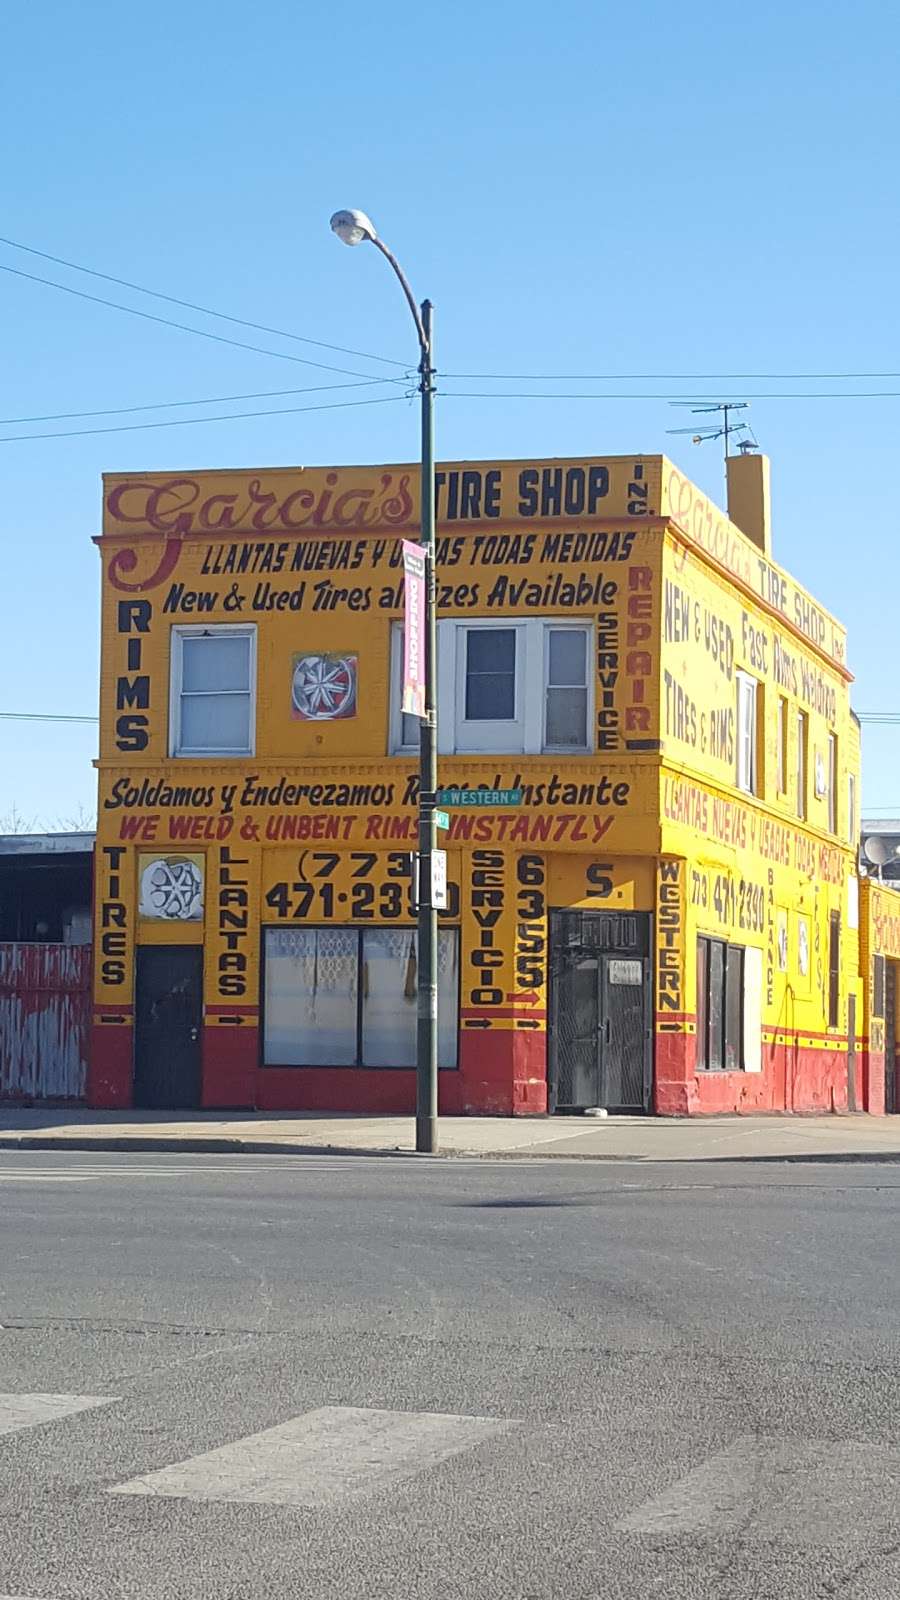 Garcias Service Tire Shop Inc. | 6353 S Western Ave, Chicago, IL 60636